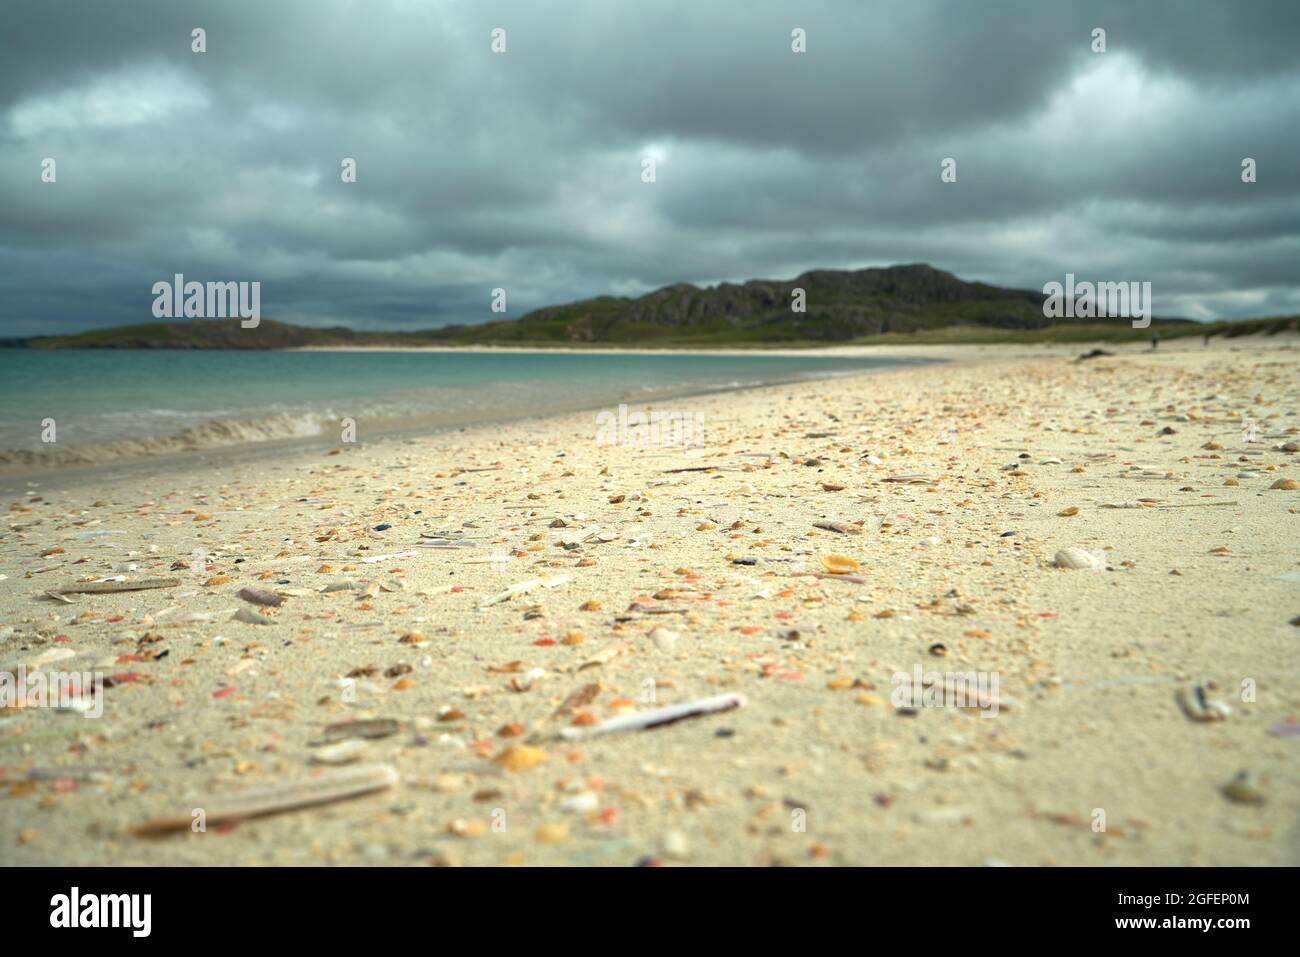 La plage de coquillages à Reef dans l'île de Lewis avec la ligne de marée parsemée de coquillages colorés. Banque D'Images